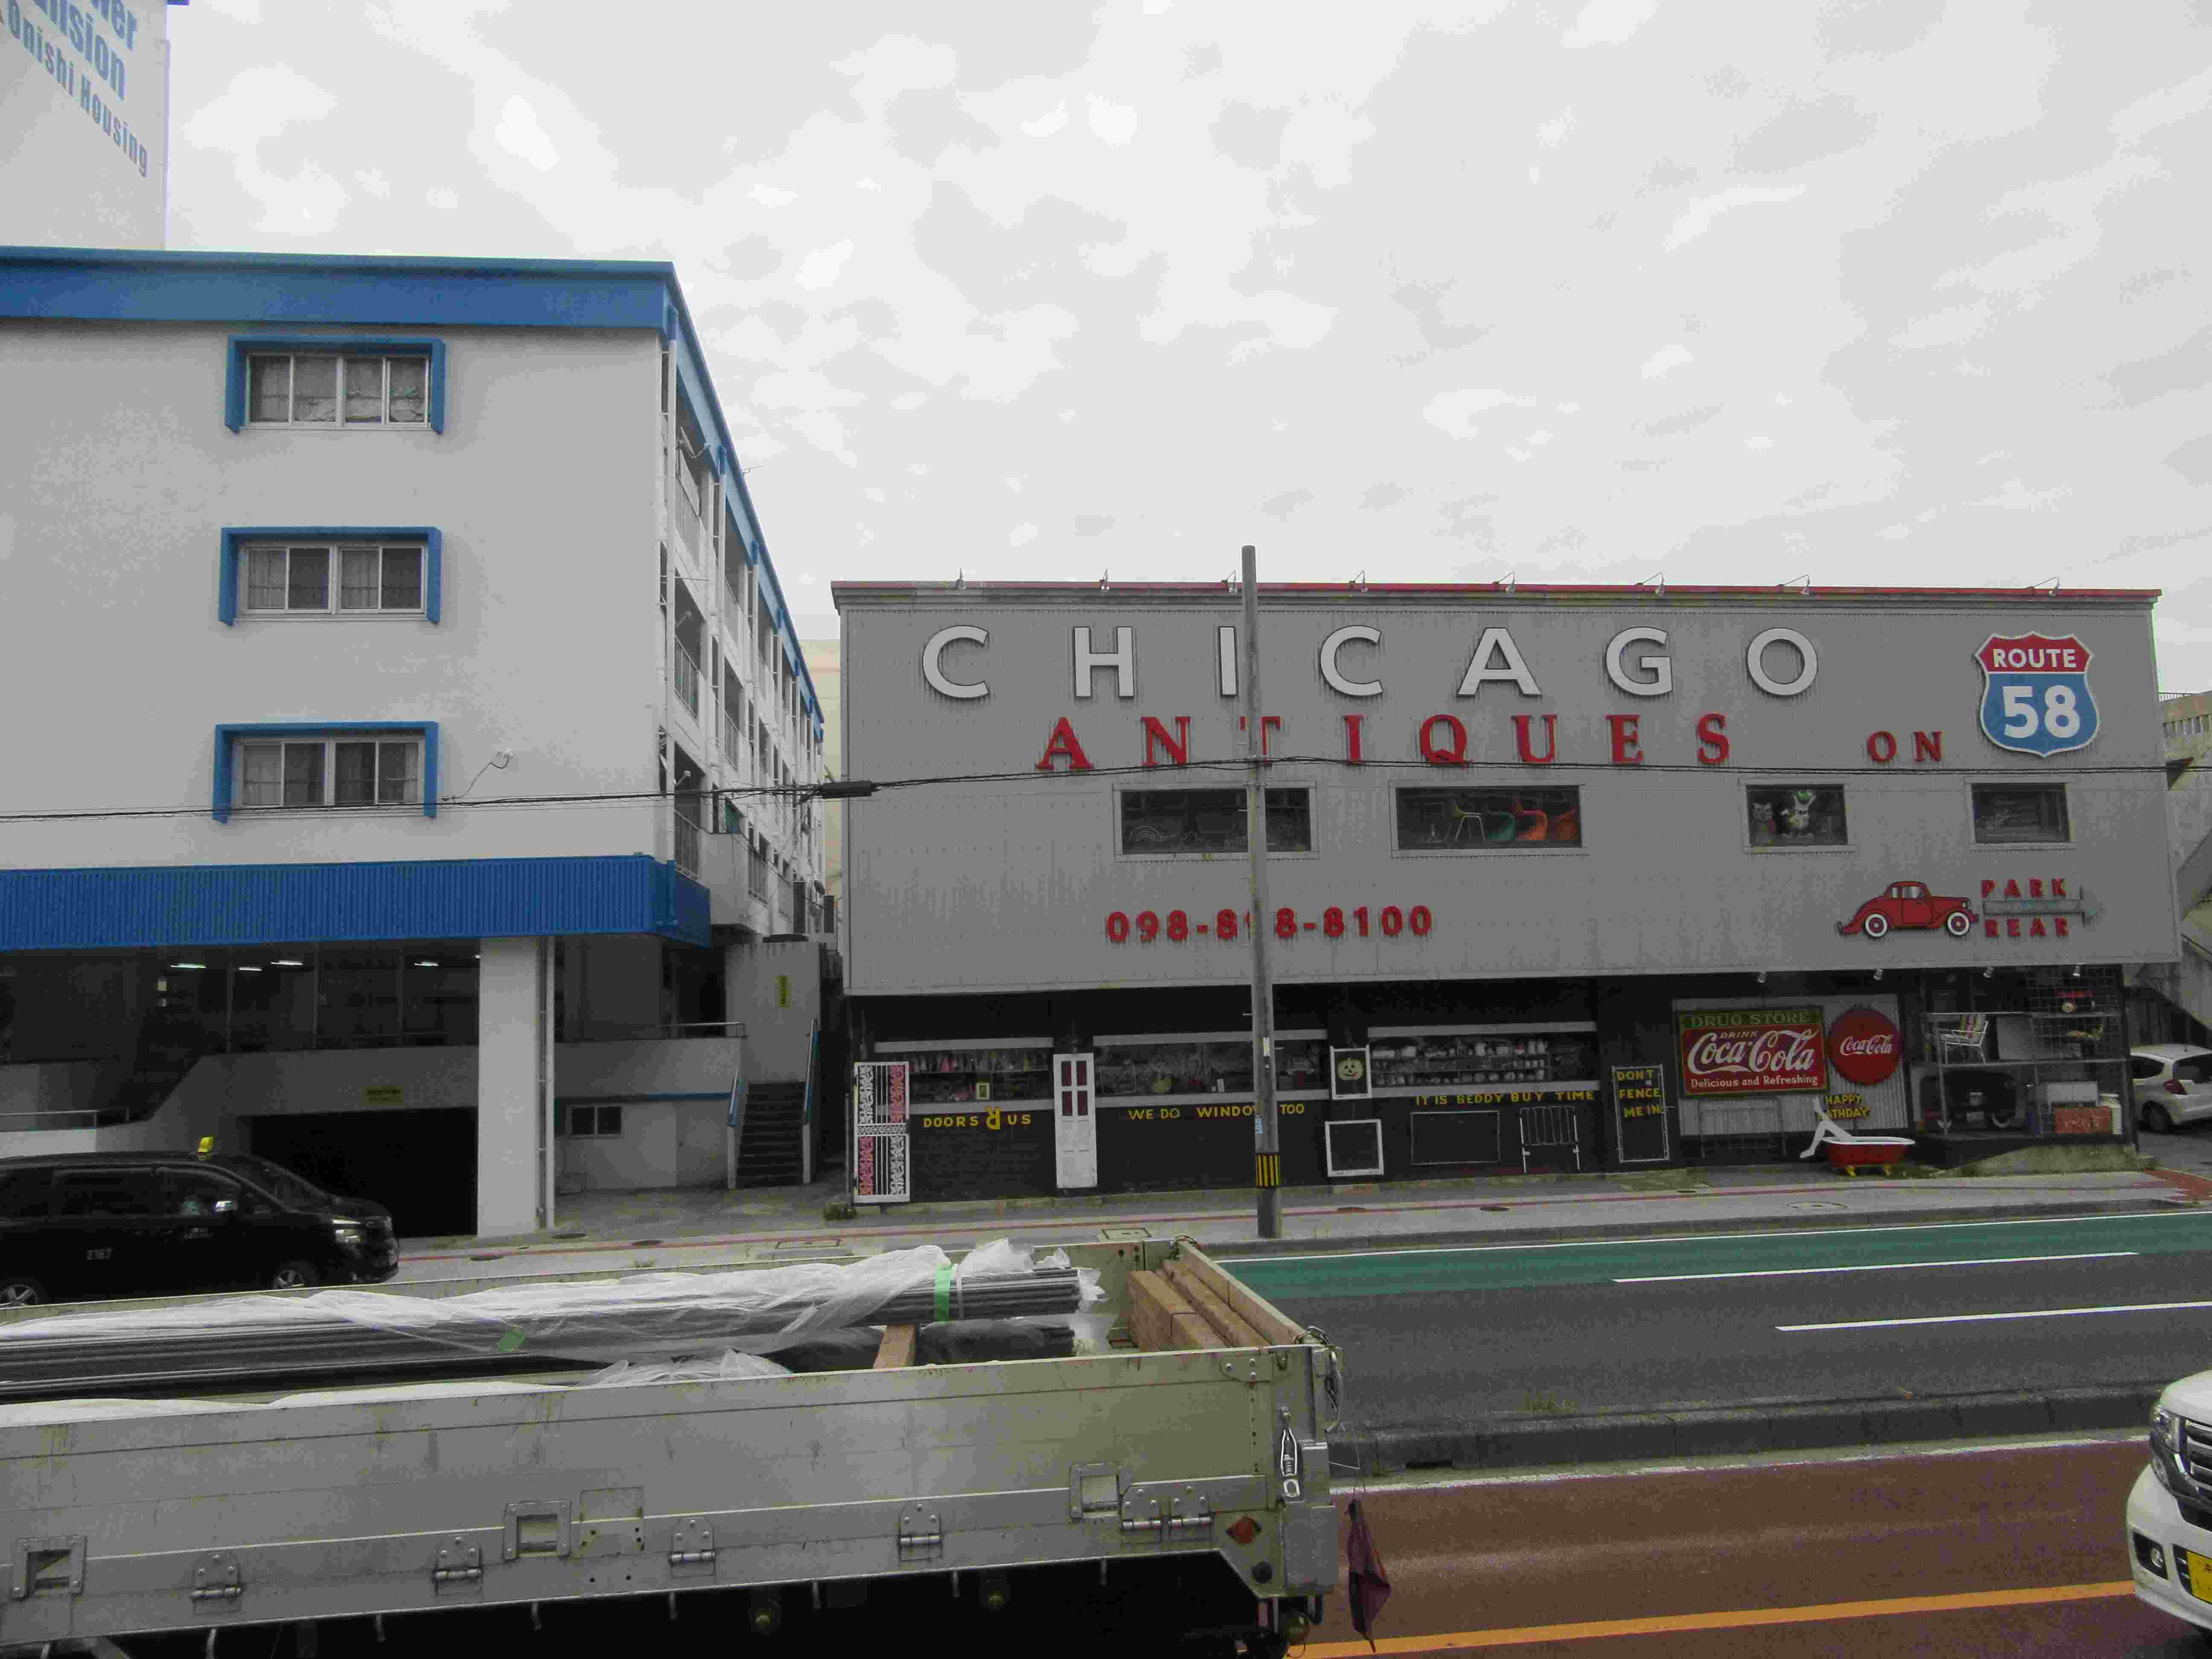 沖縄県宜野湾市の、『CHICAGO ANTIQUES』というアンティークショップ。